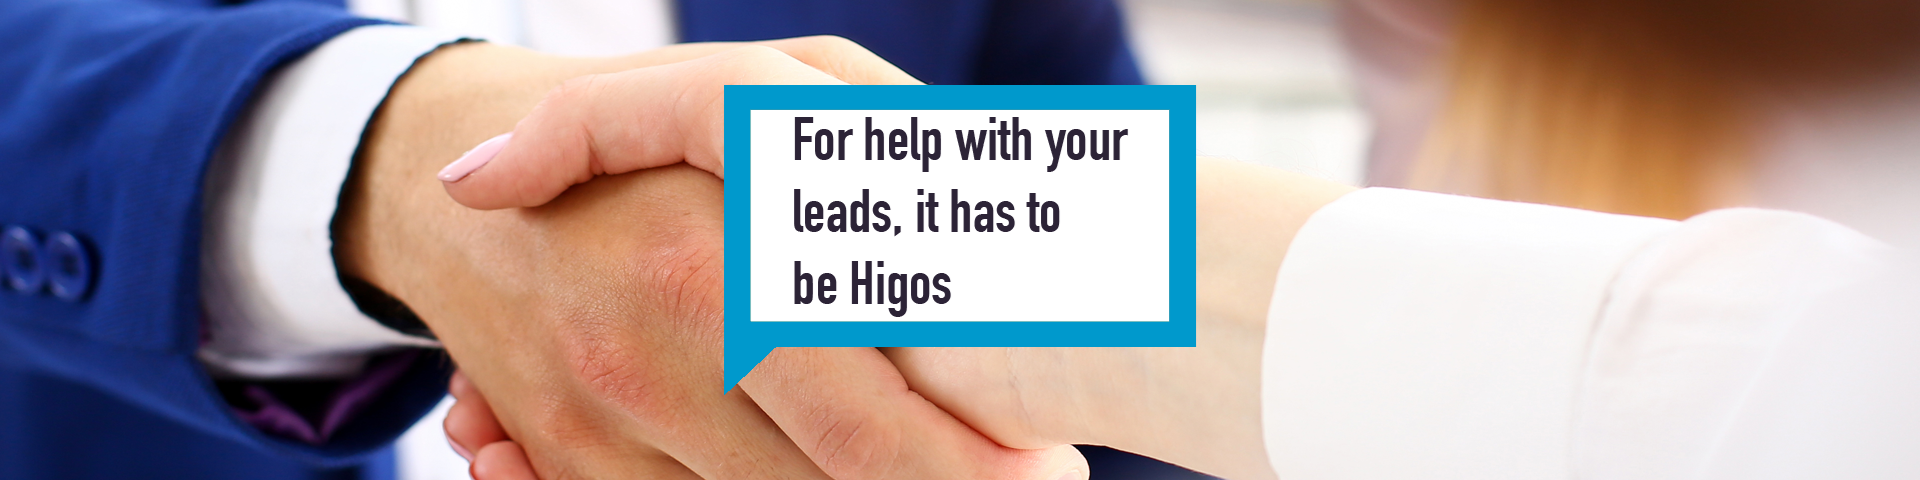 Higos lead tracker